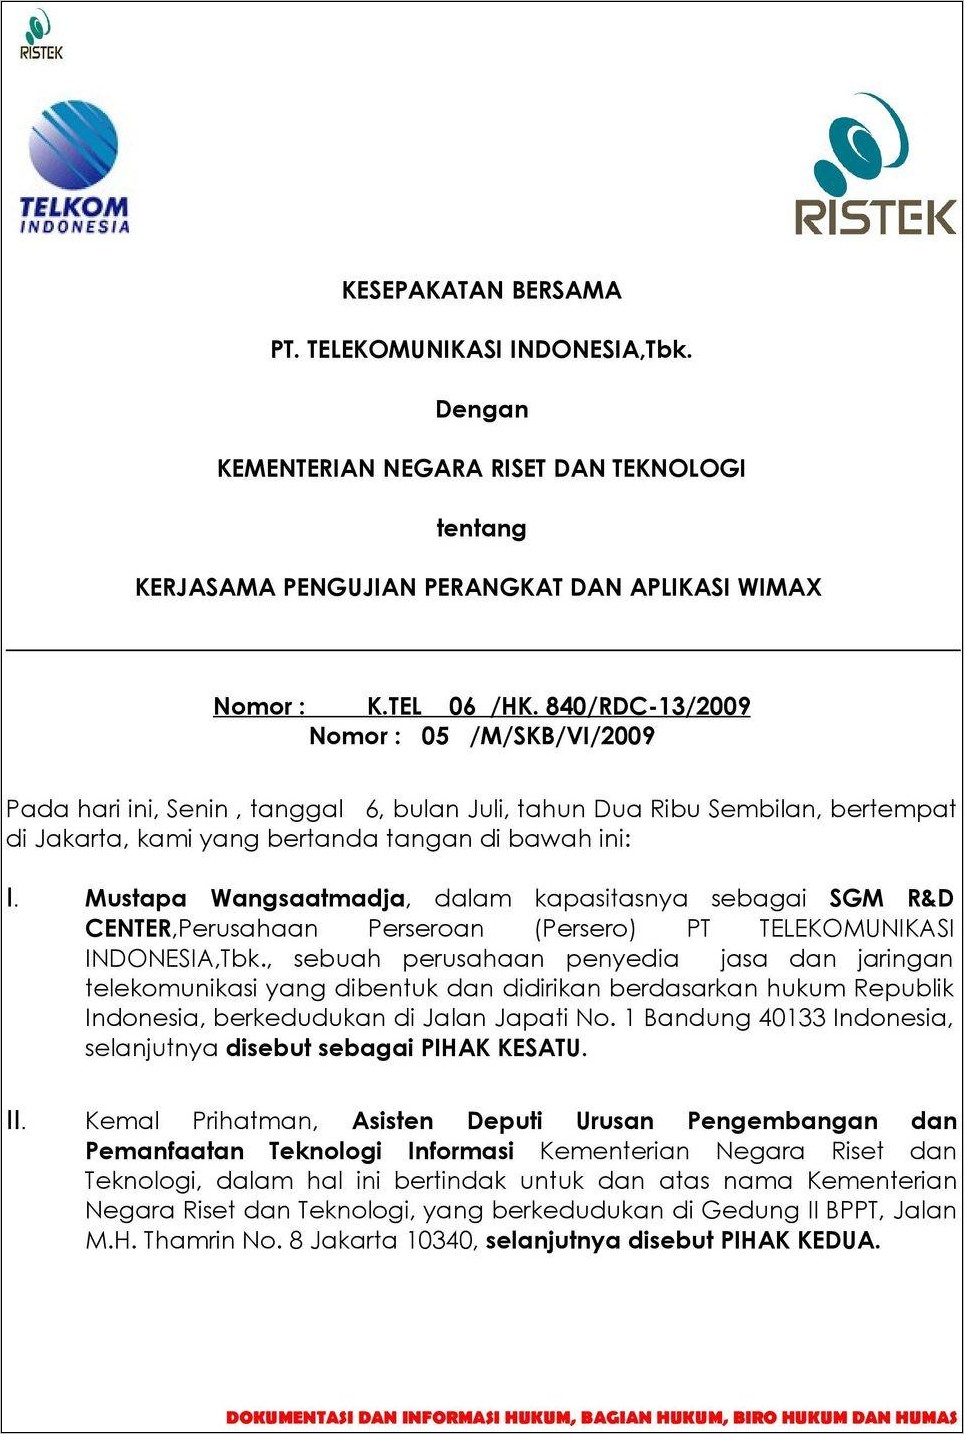 Contoh Surat Kontrak Kerja Karyawan Tetap Pt Telkom Indonesia